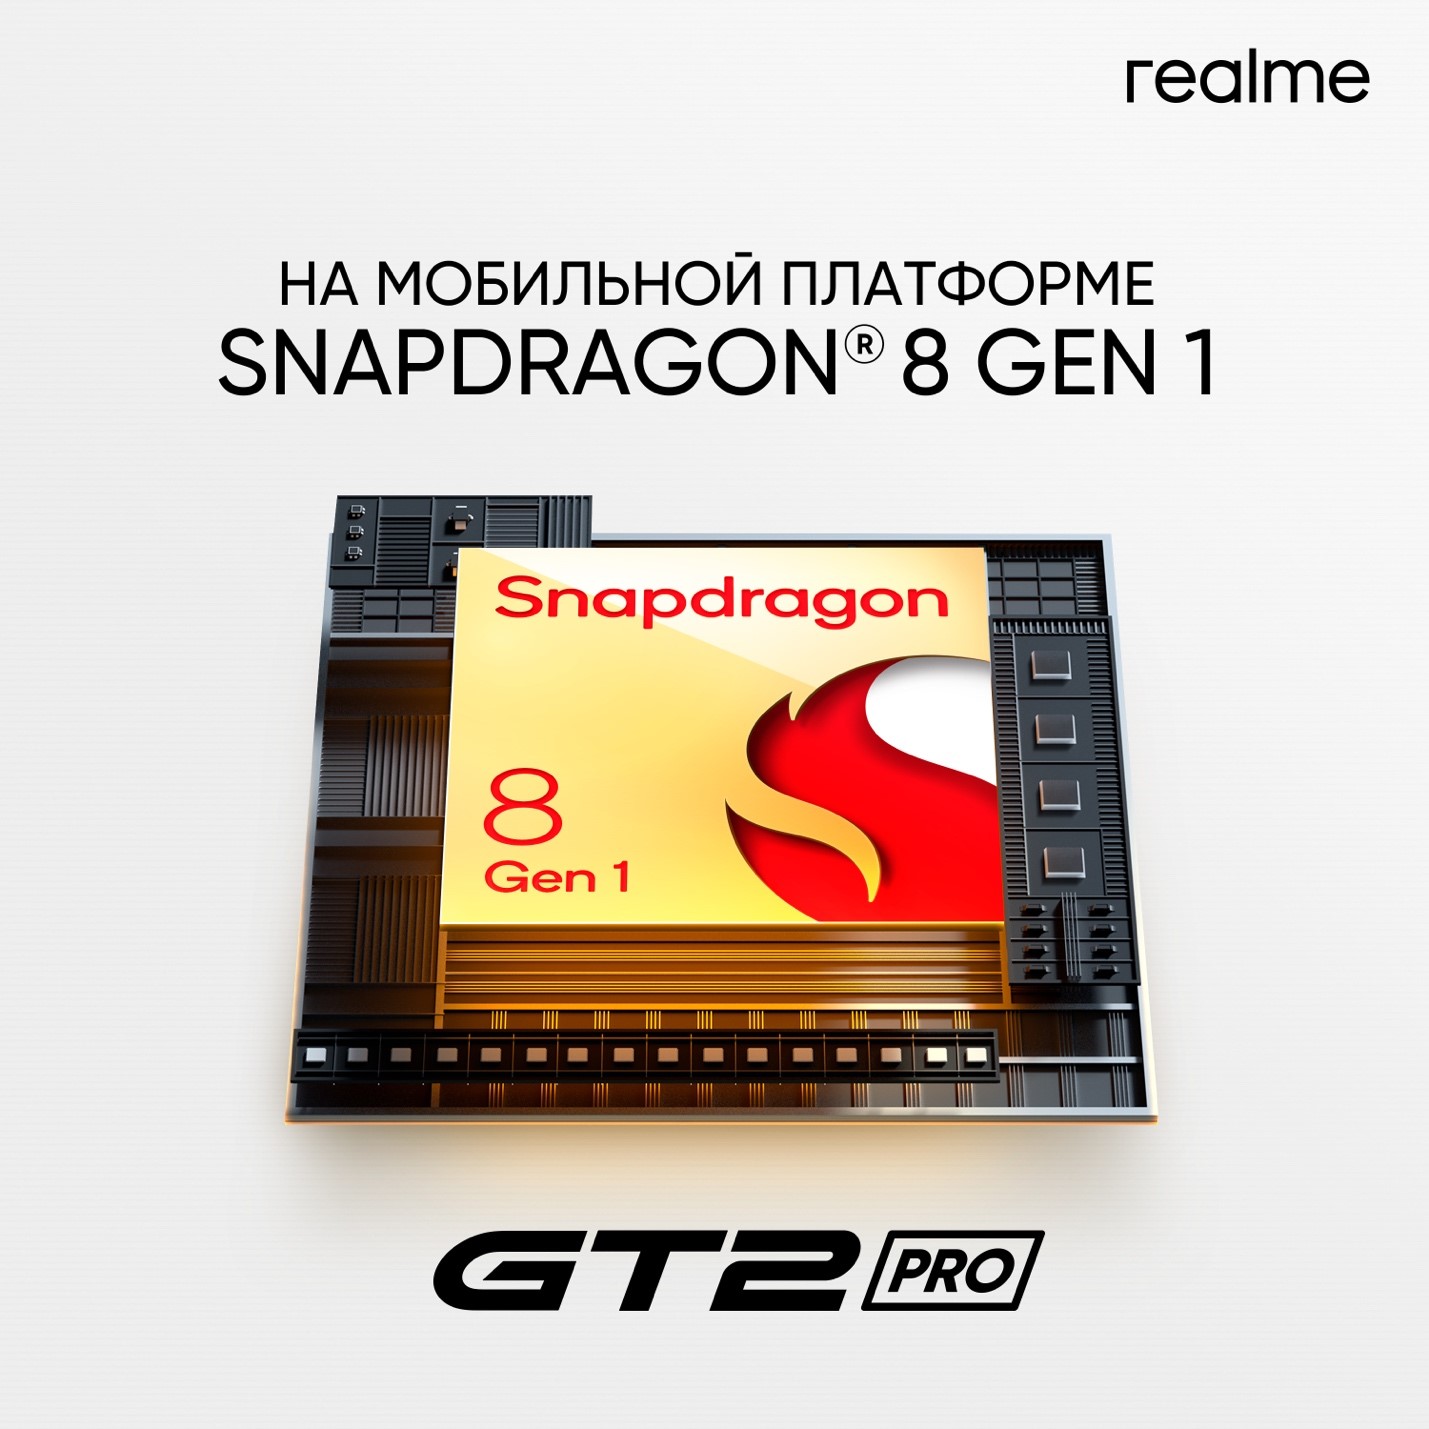 фото: realme GT 2 Pro: первый премиальный смартфон компании получил флагманский процессор Snapdragon® 8 Gen 1